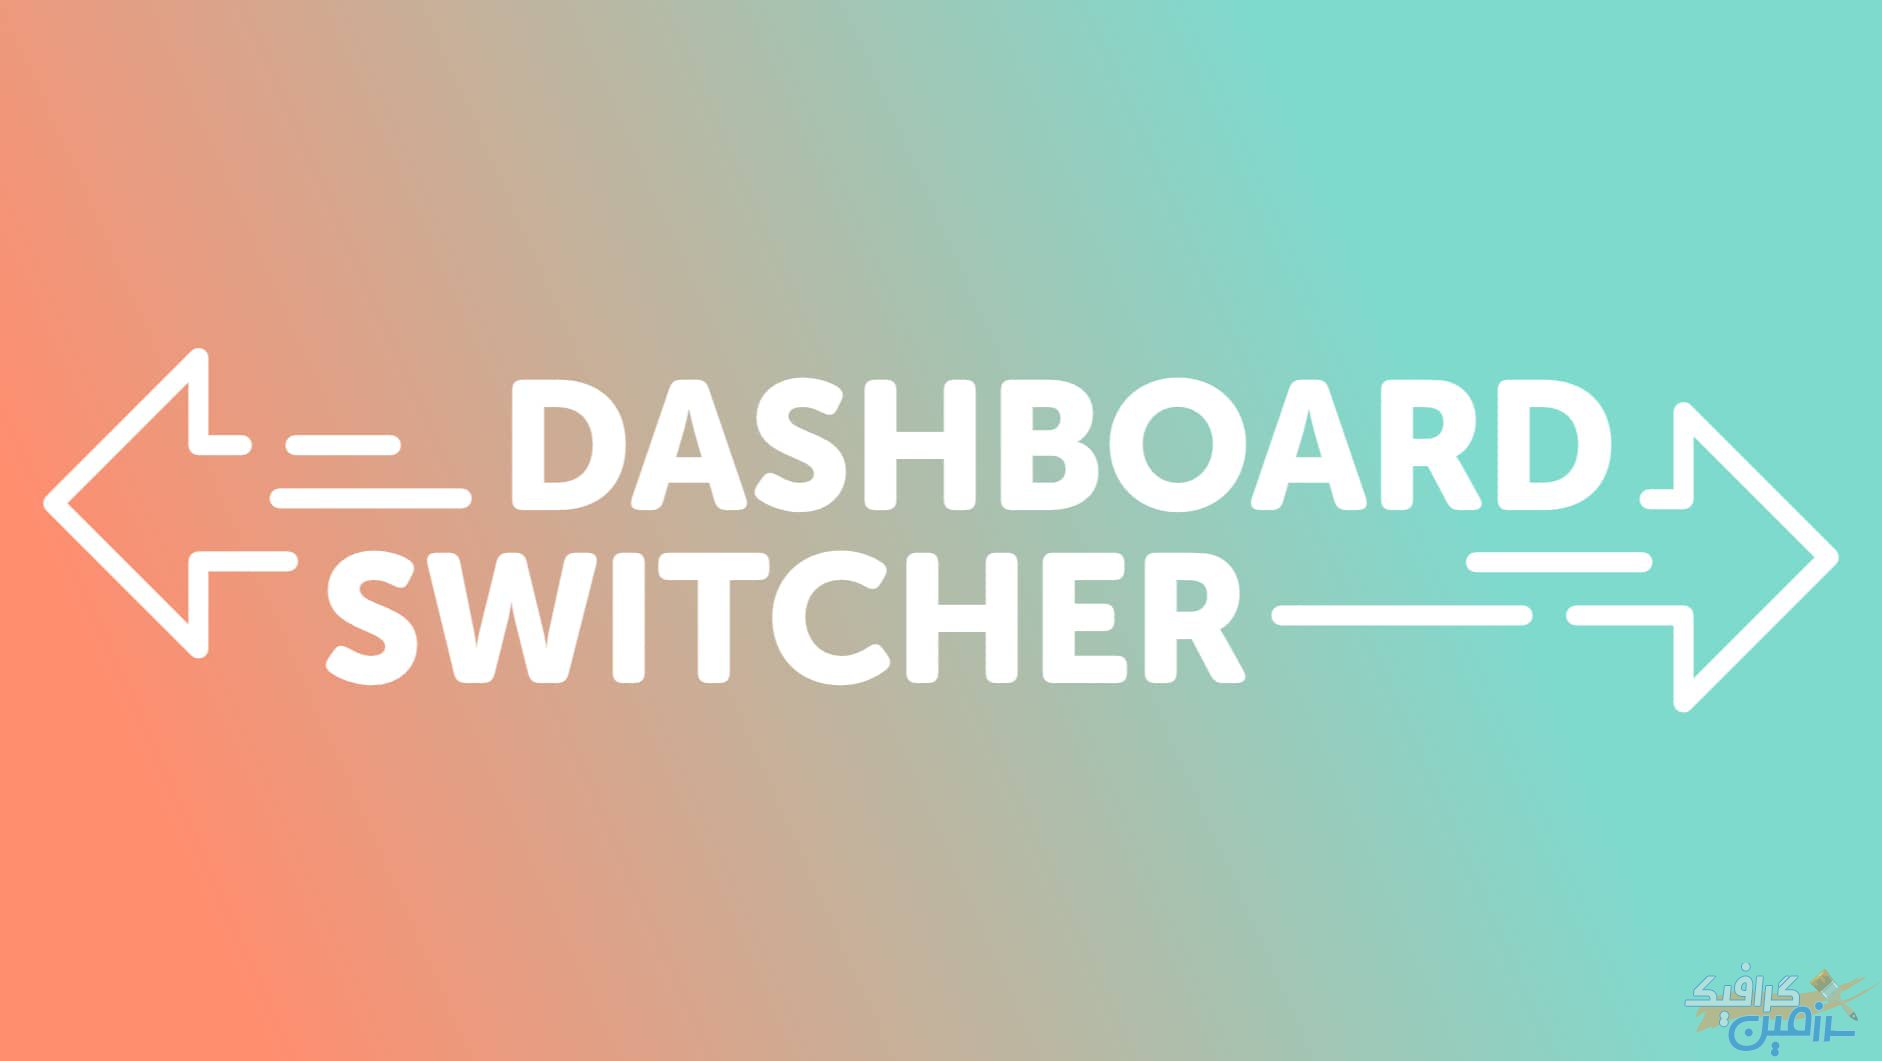 دانلود افزونه وردپرس Dashboard Switcher – تغییر صفحه خوش آمد گویی وردپرس